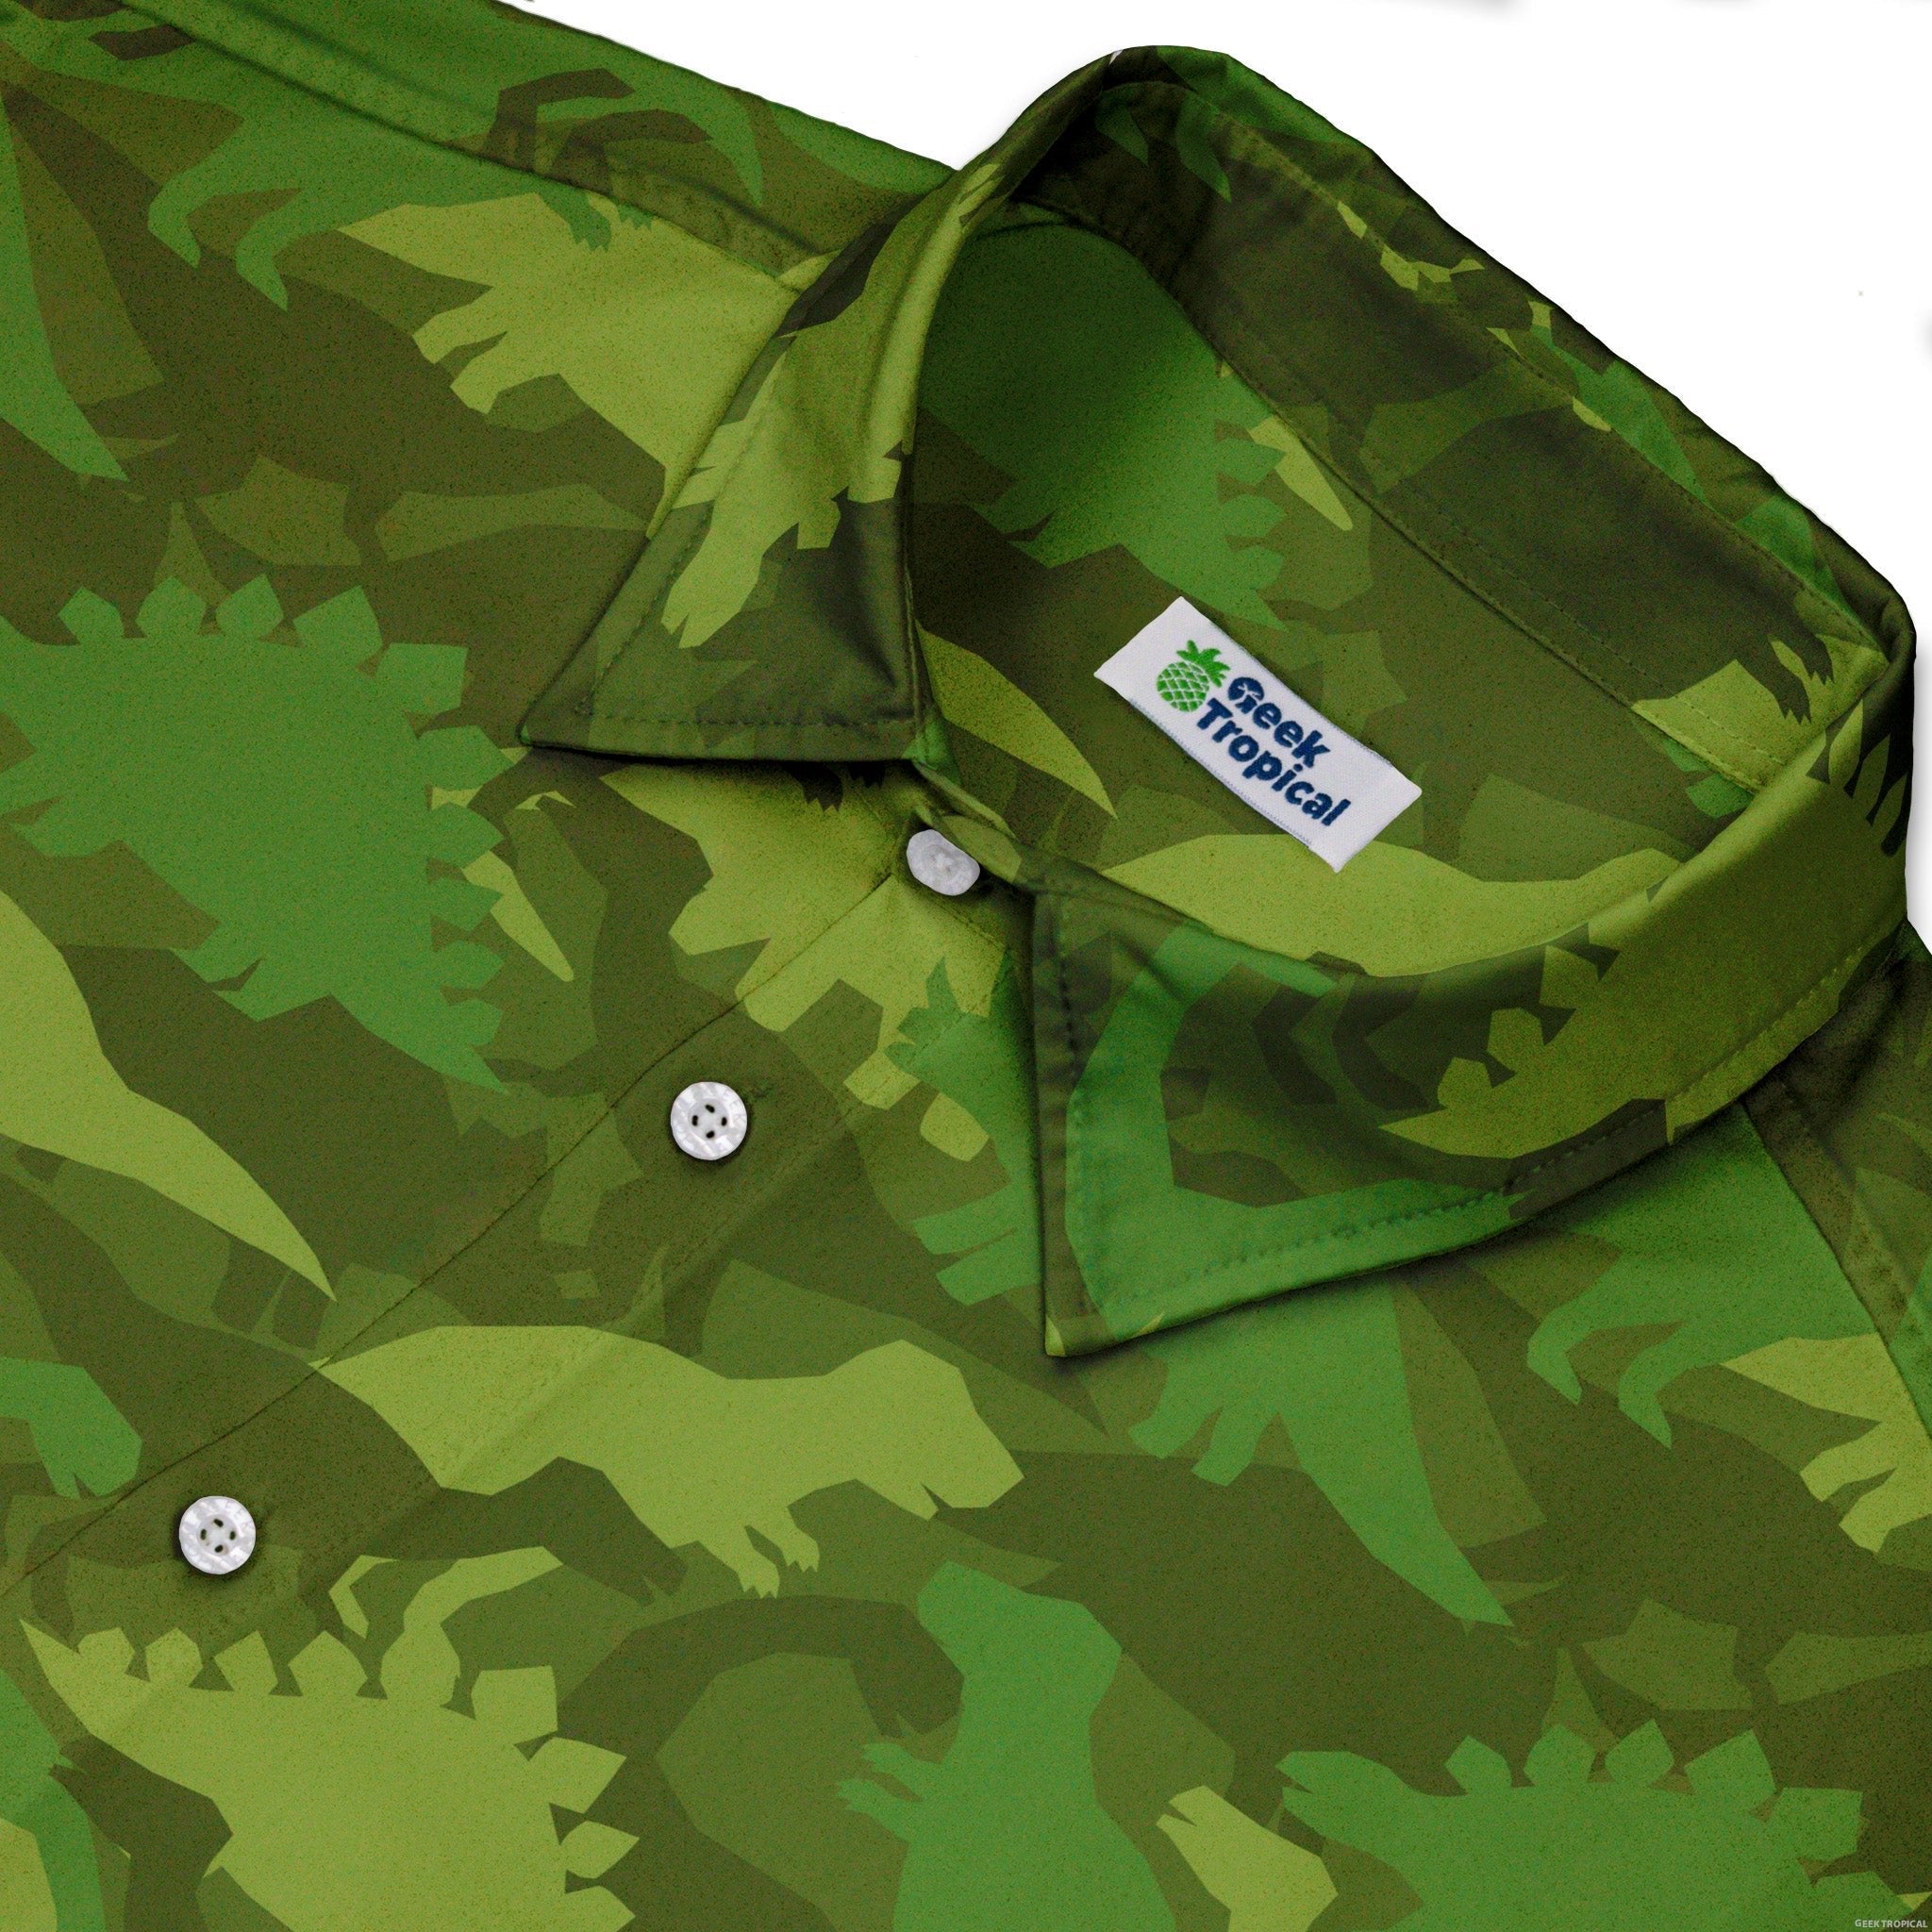 Dinosaur Khaki Army Dinosaur Green Button Up Shirt - adult sizing - dinosaur print -